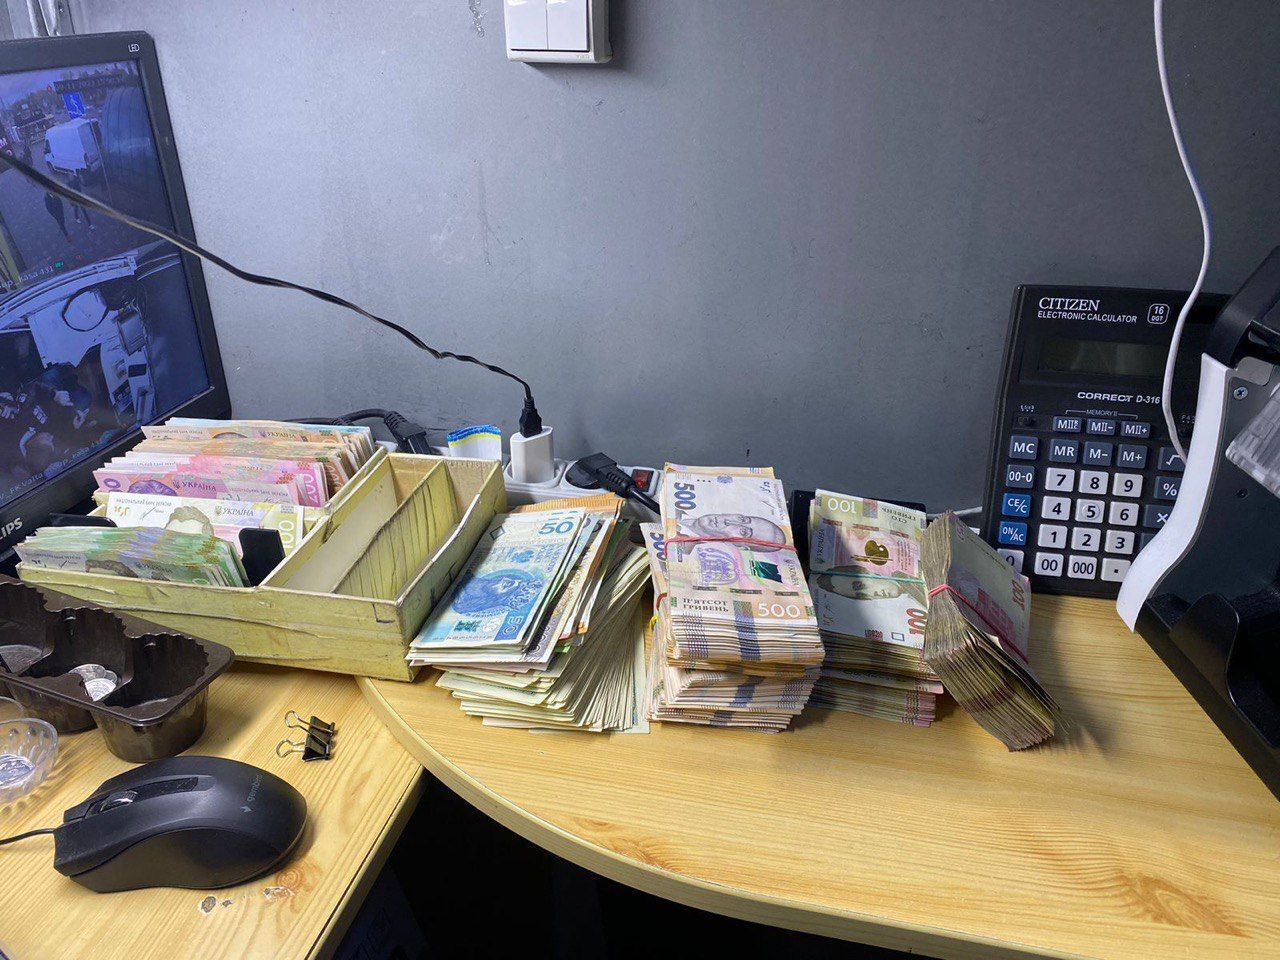 У Києві викрили фейкові обмінники, які продавали клієнтам фальшиву валюту. Фото